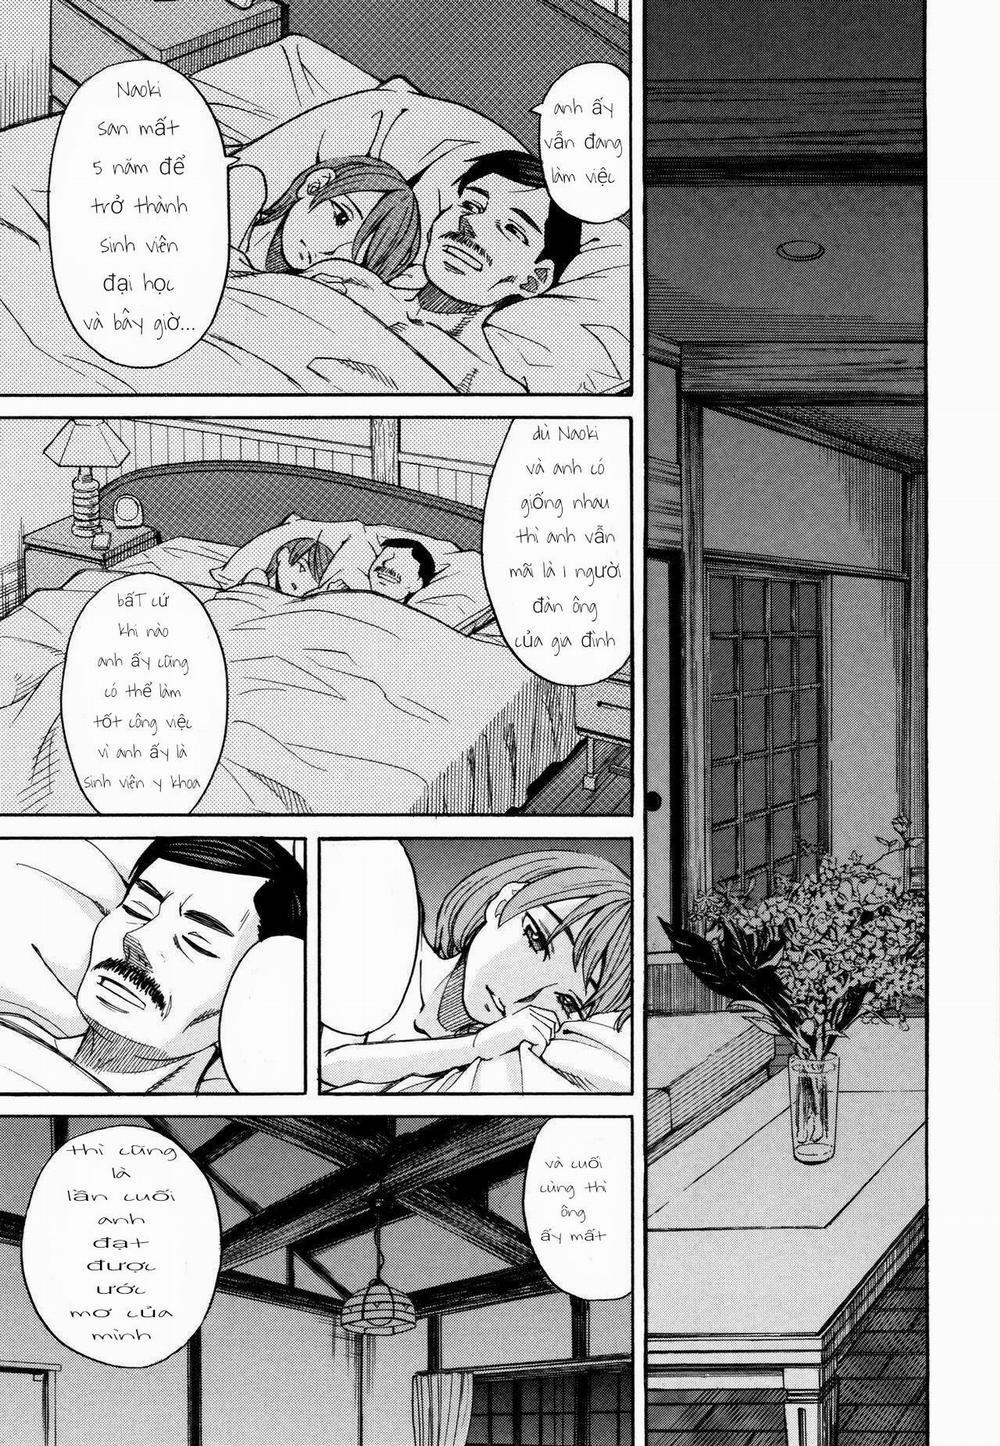 Cô gái bị cưỡng hiếp khi đang ngủ Chương 1 Trang 18